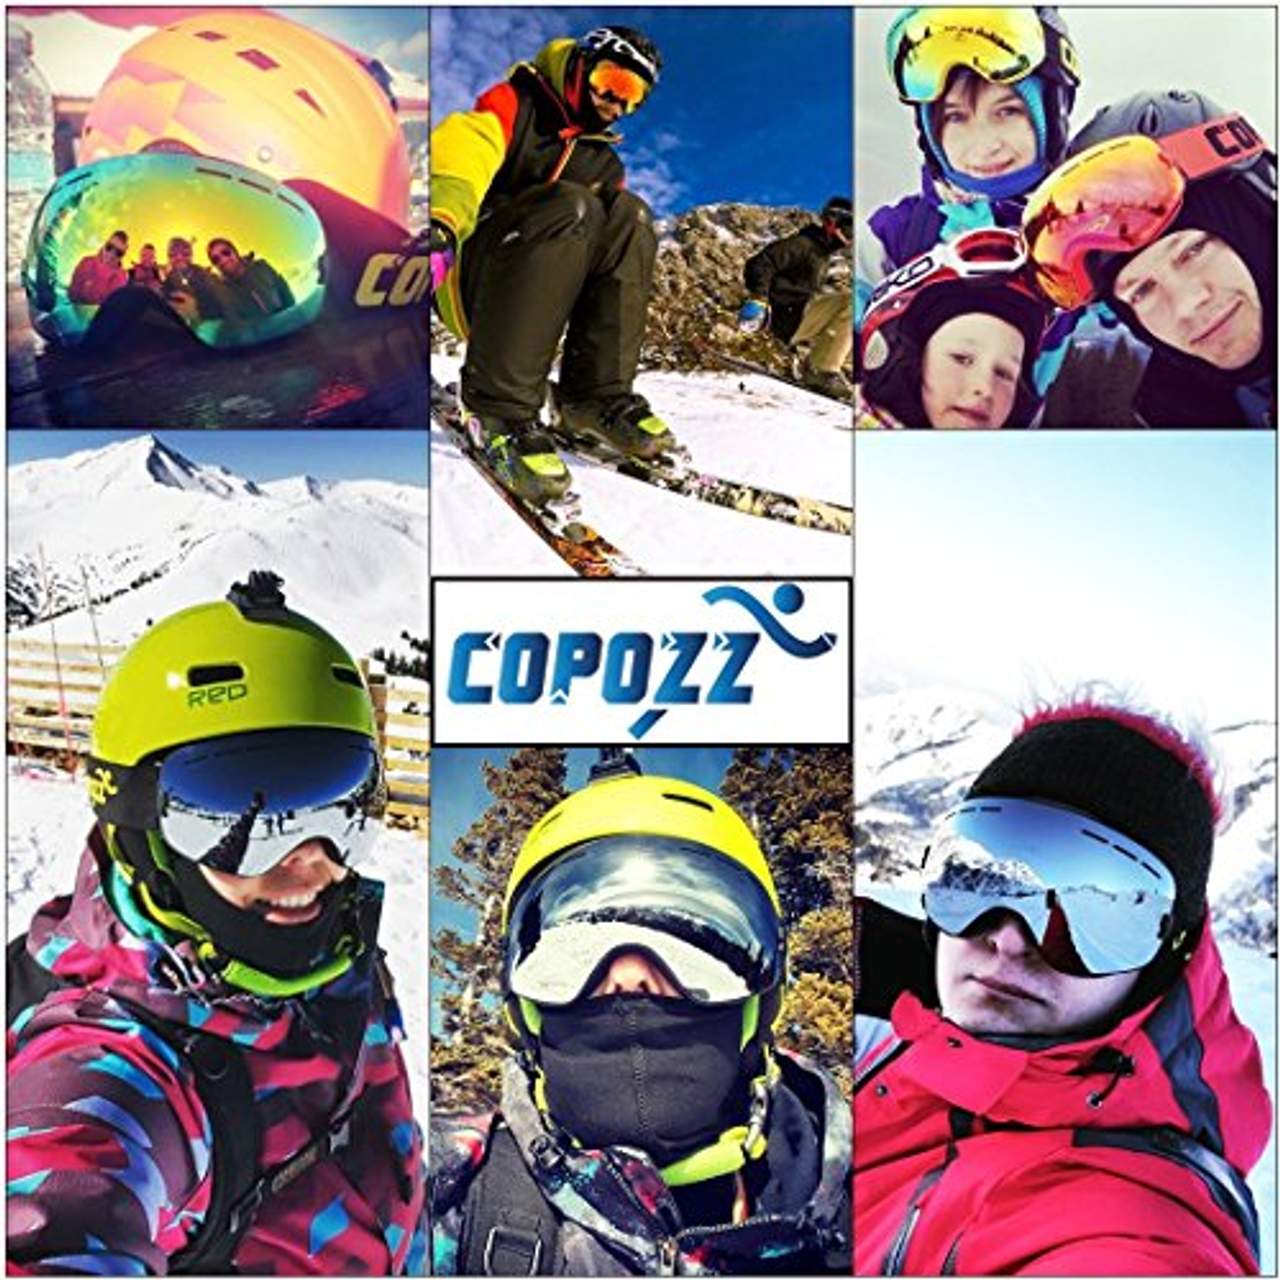 COPOZZ G1 Ski- Snowboardbrille